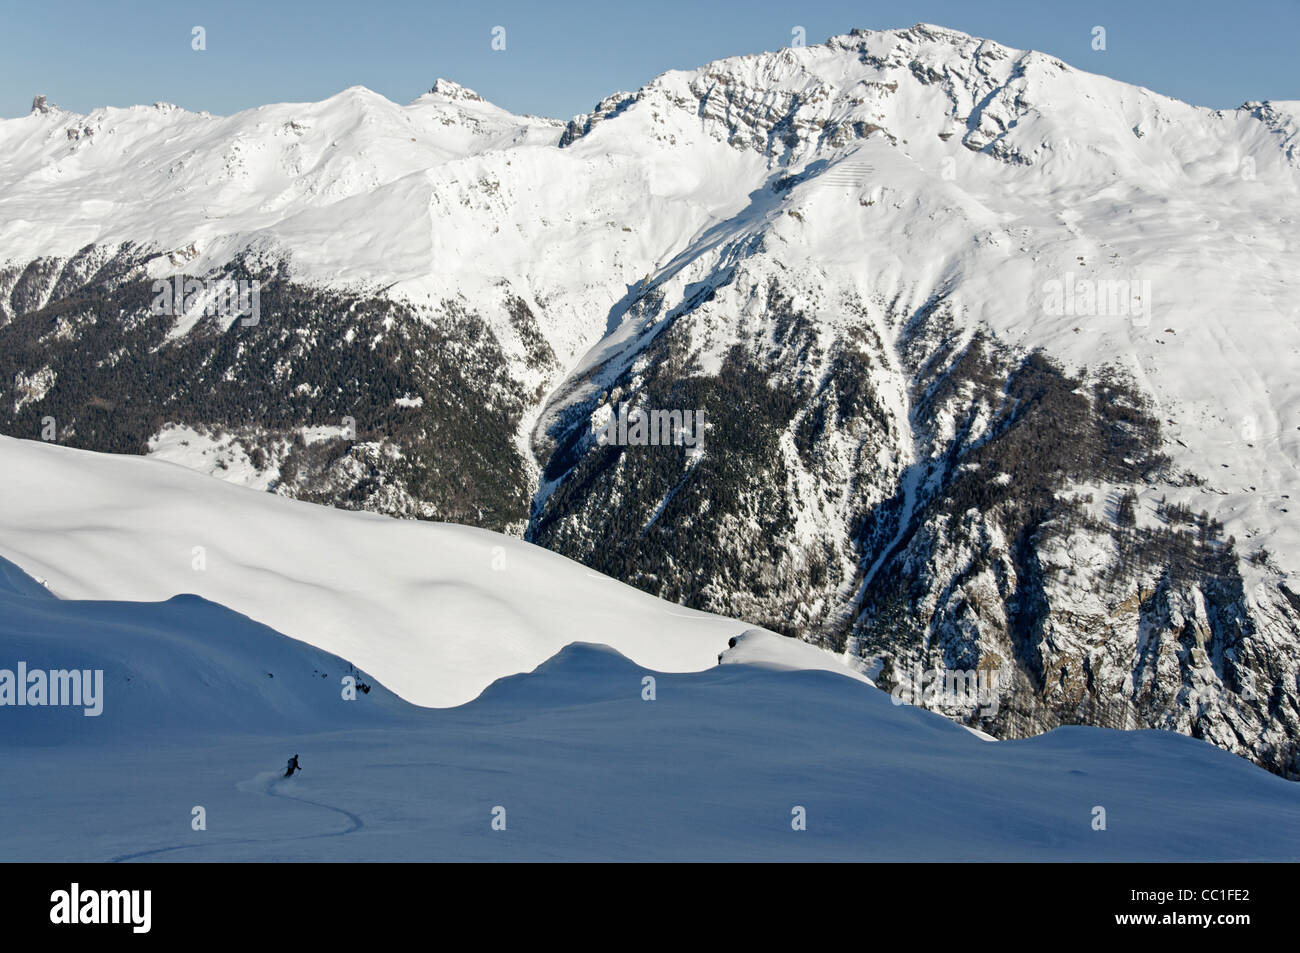 Ski descent from the Palanche de la Creta Valais Switzerland Stock Photo